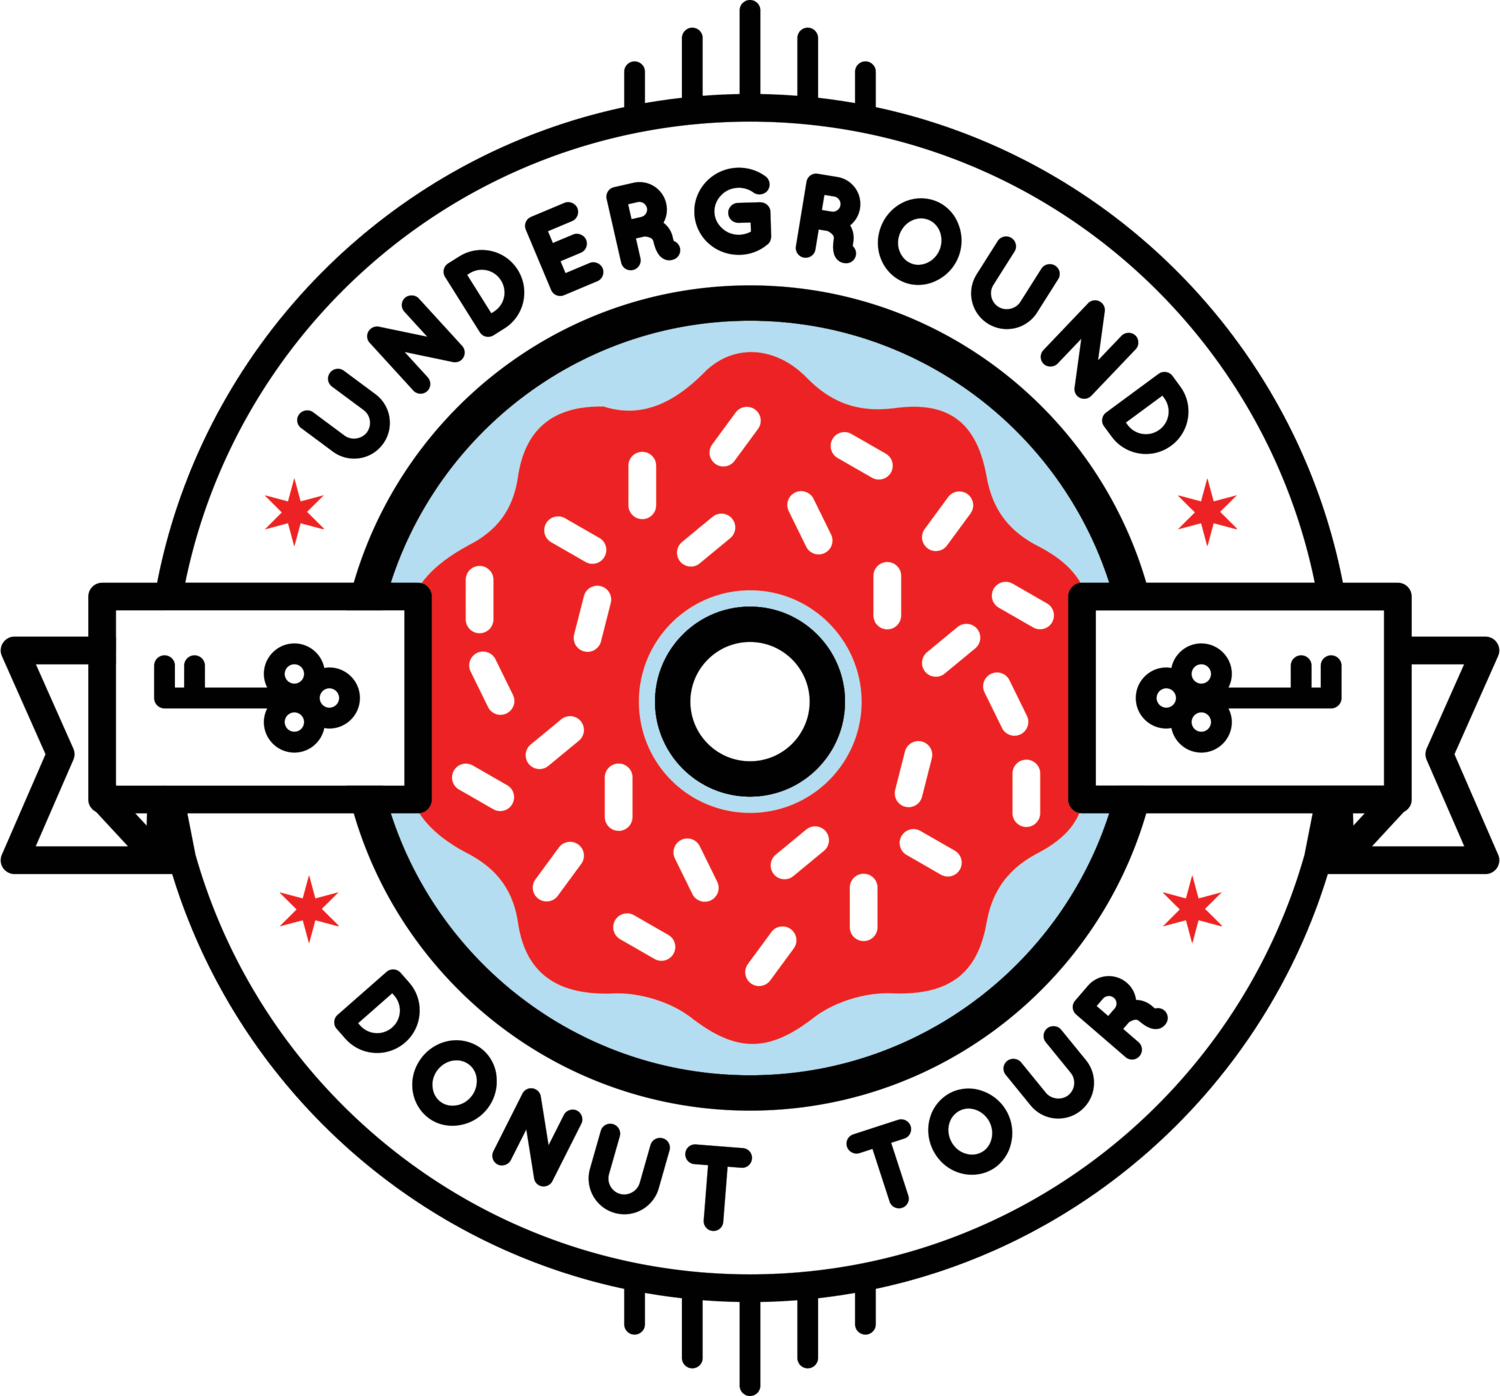 Underground Donut Tour